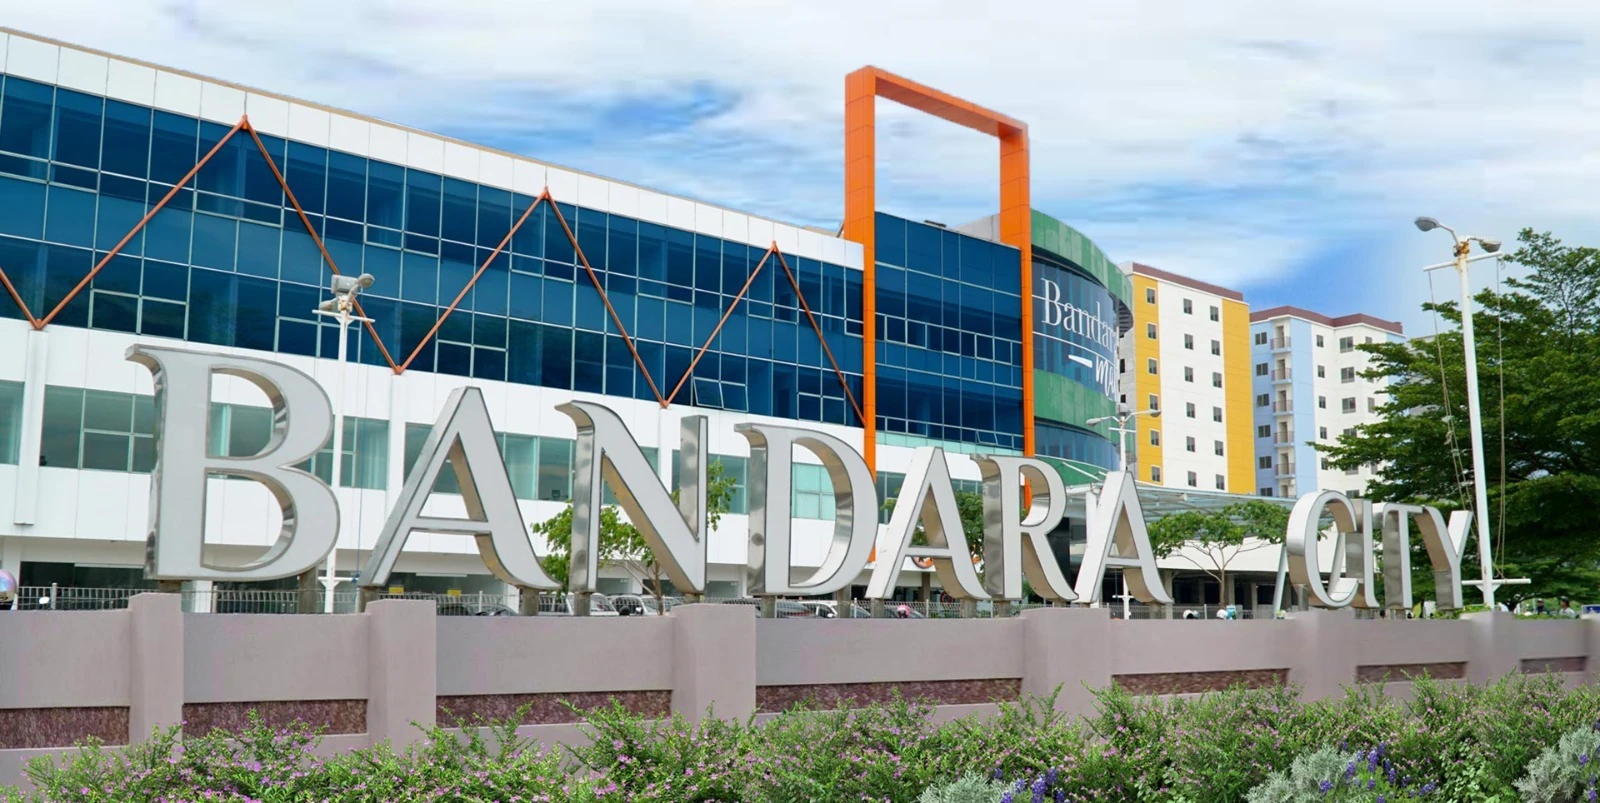 Bandara City Tawarkan Apartemen Siap Huni Rp500 Juta Dekat Bandara